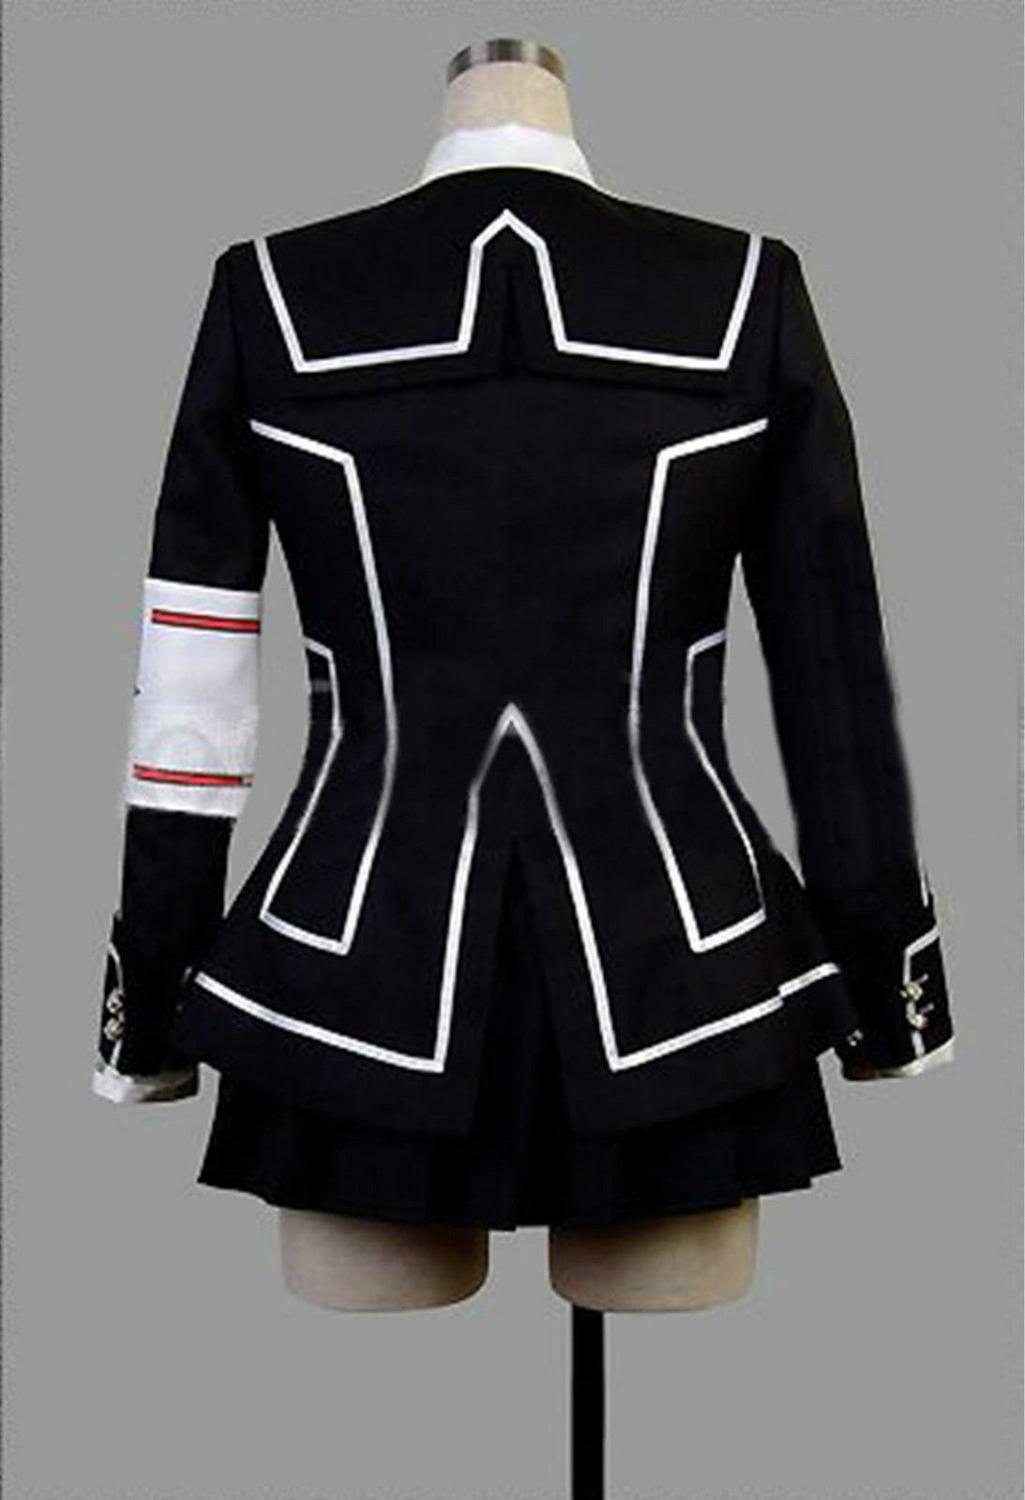 Vampire Knight Cosplay Costume Yuki or Black Womens Cross White Dress uniform